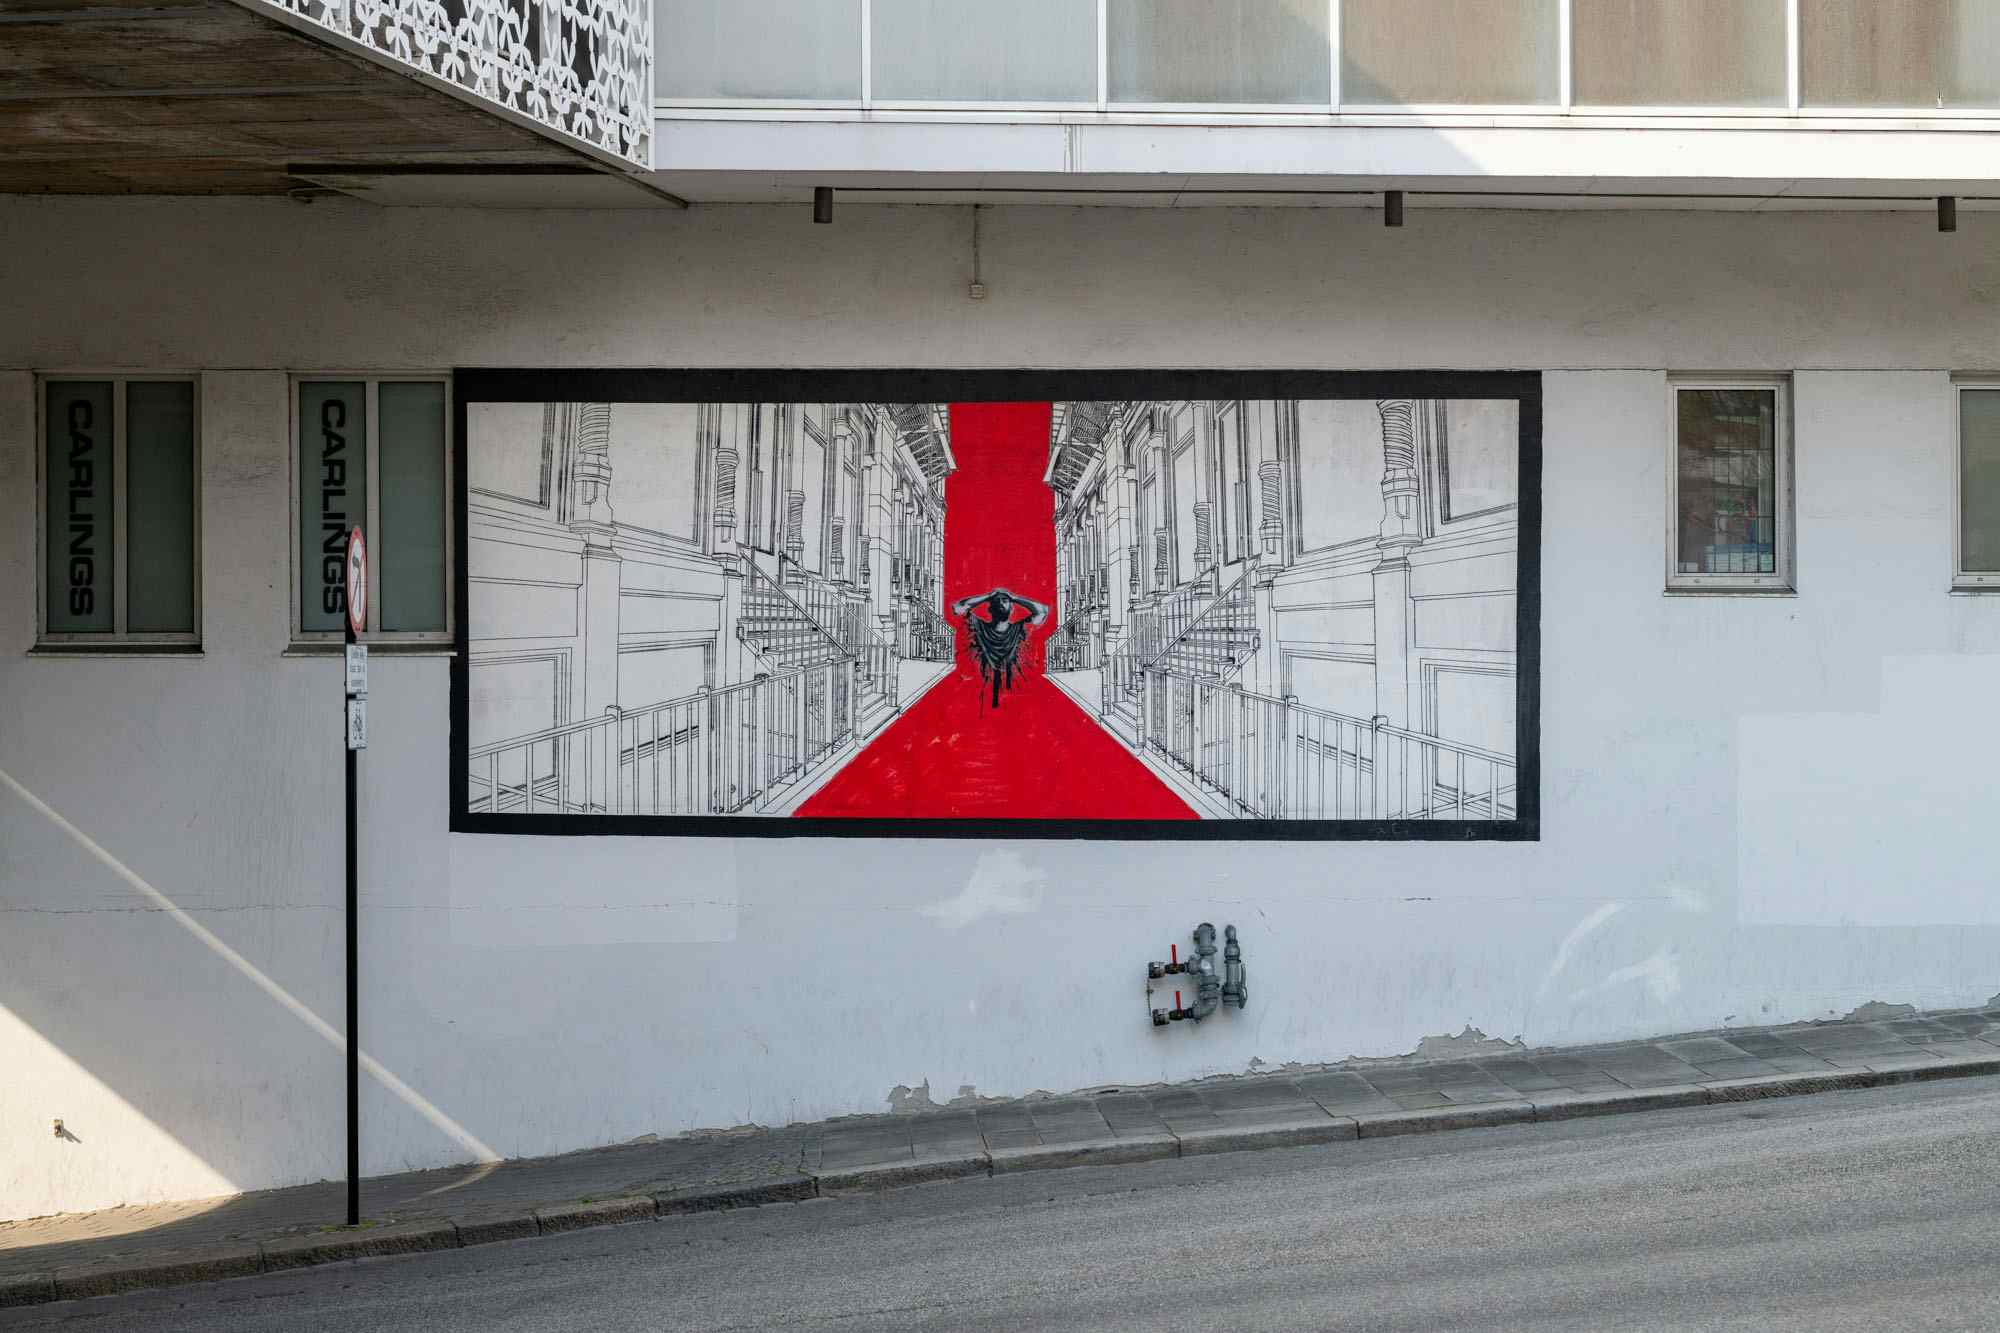 Stavanger Street art: "Untitled"